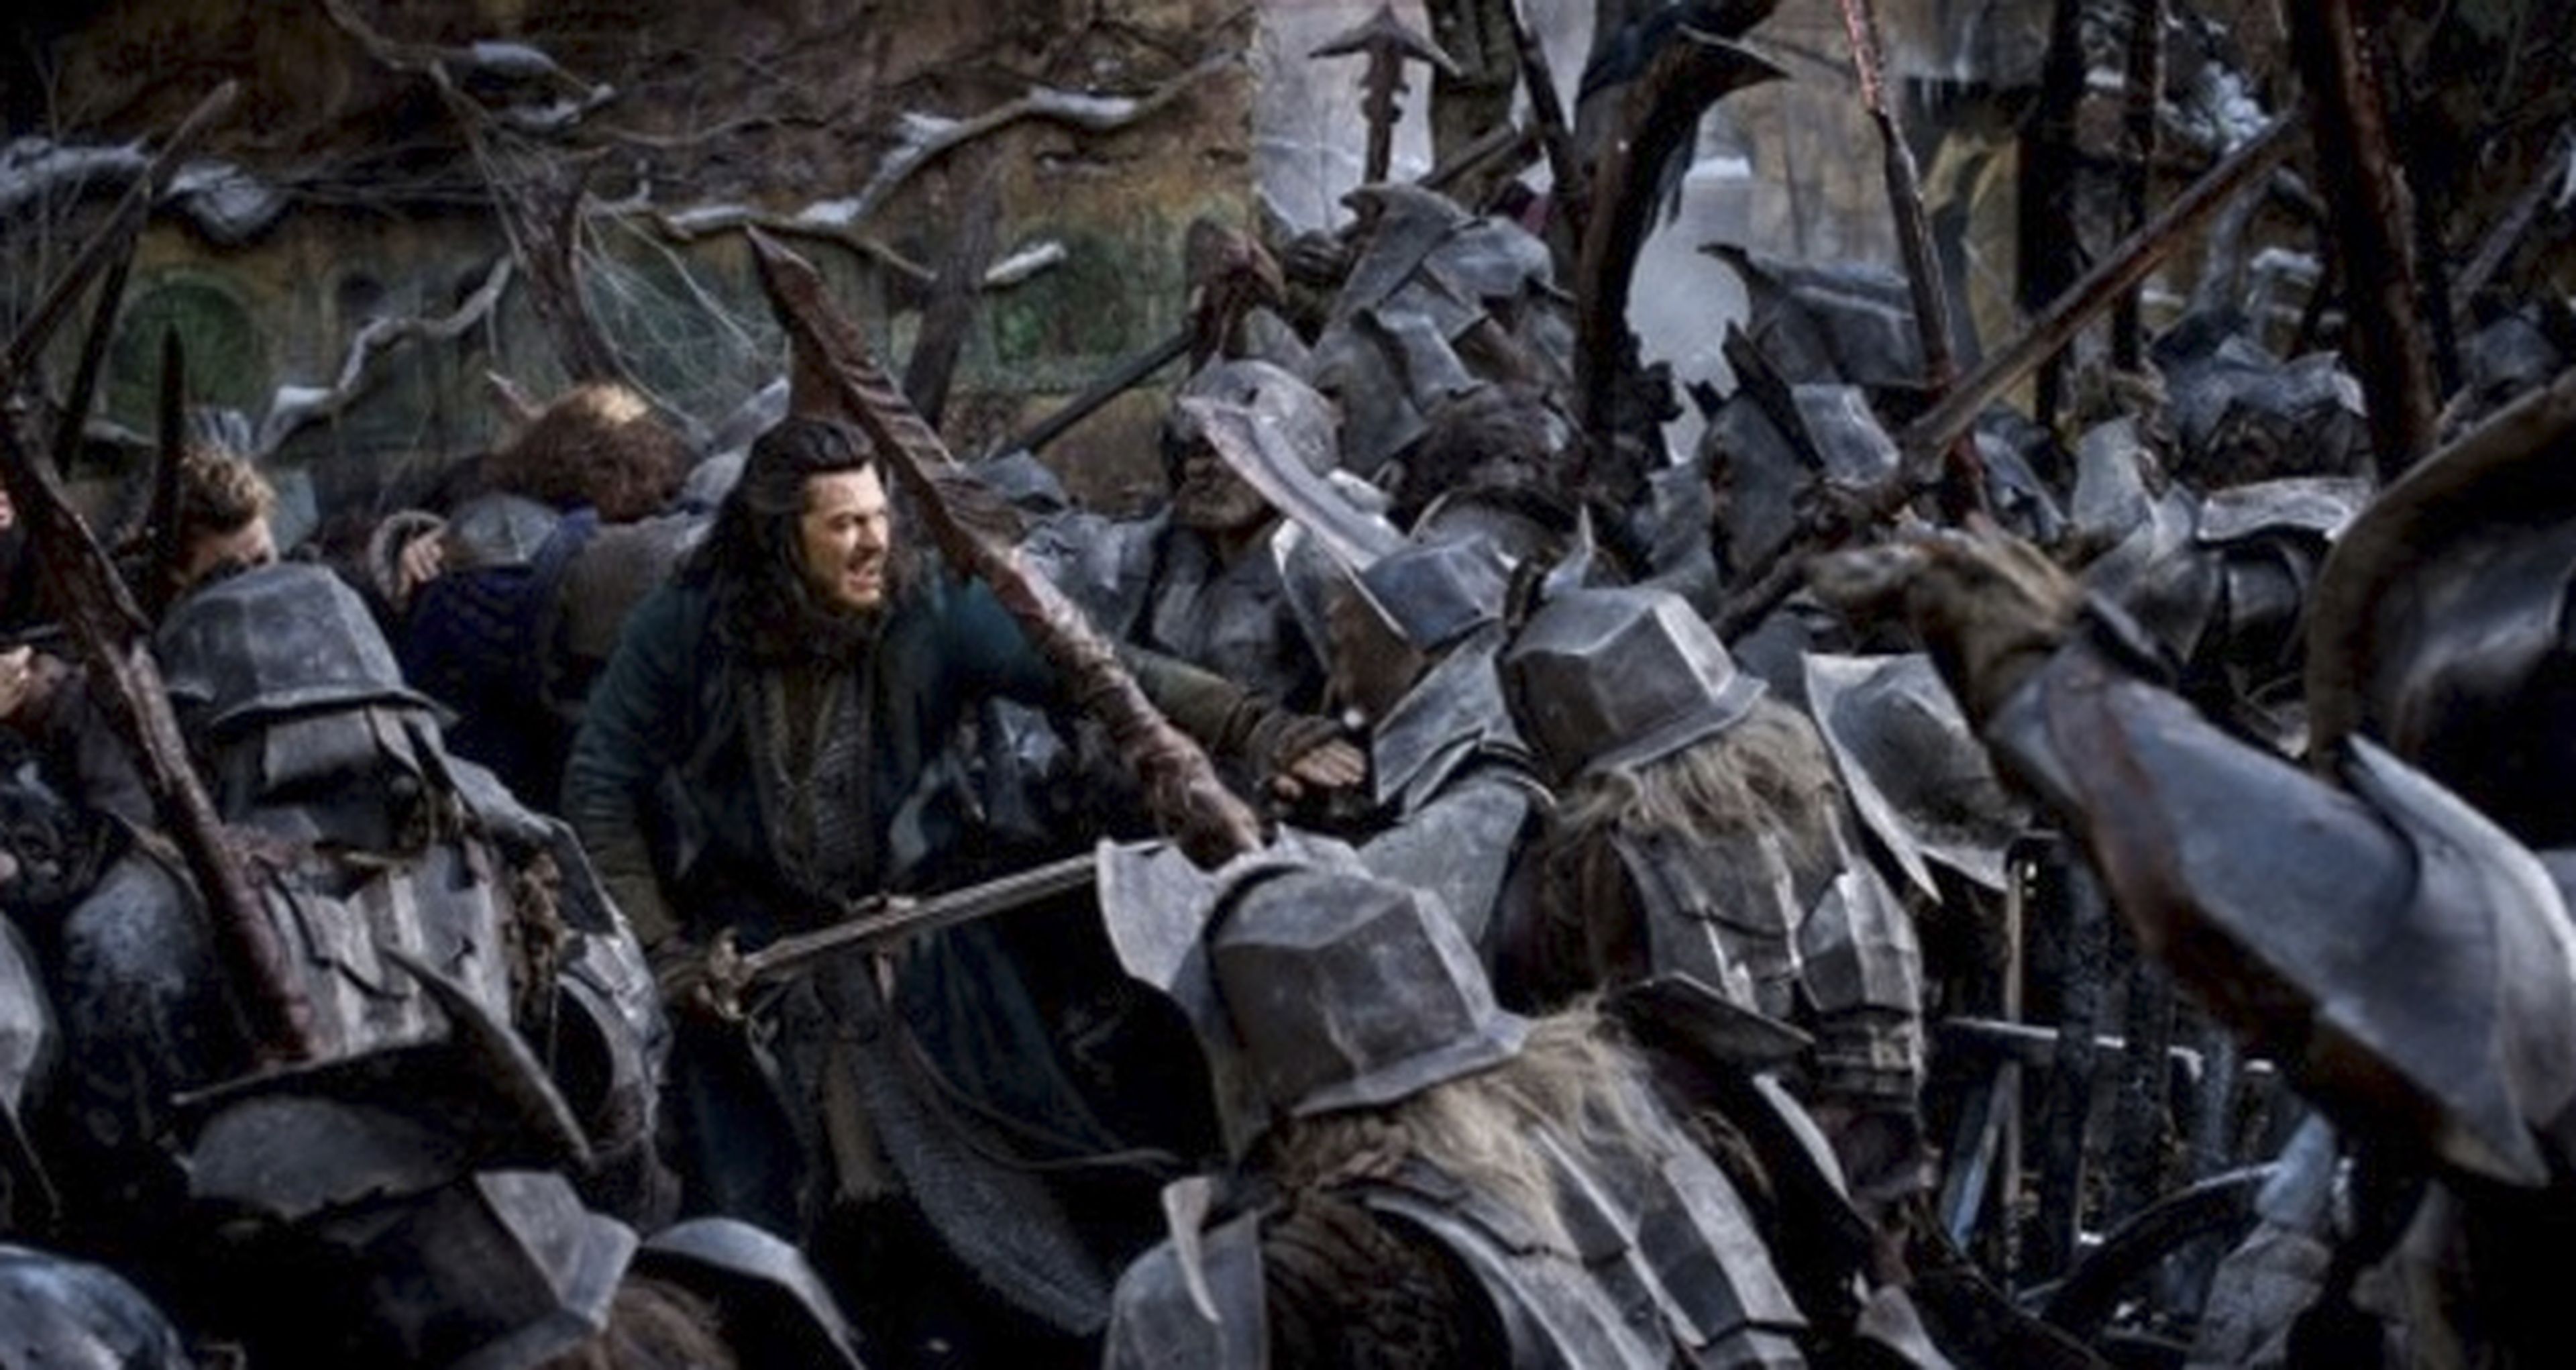 La batalla de los cinco ejércitos de El hobbit durará 20 minutos del metraje total